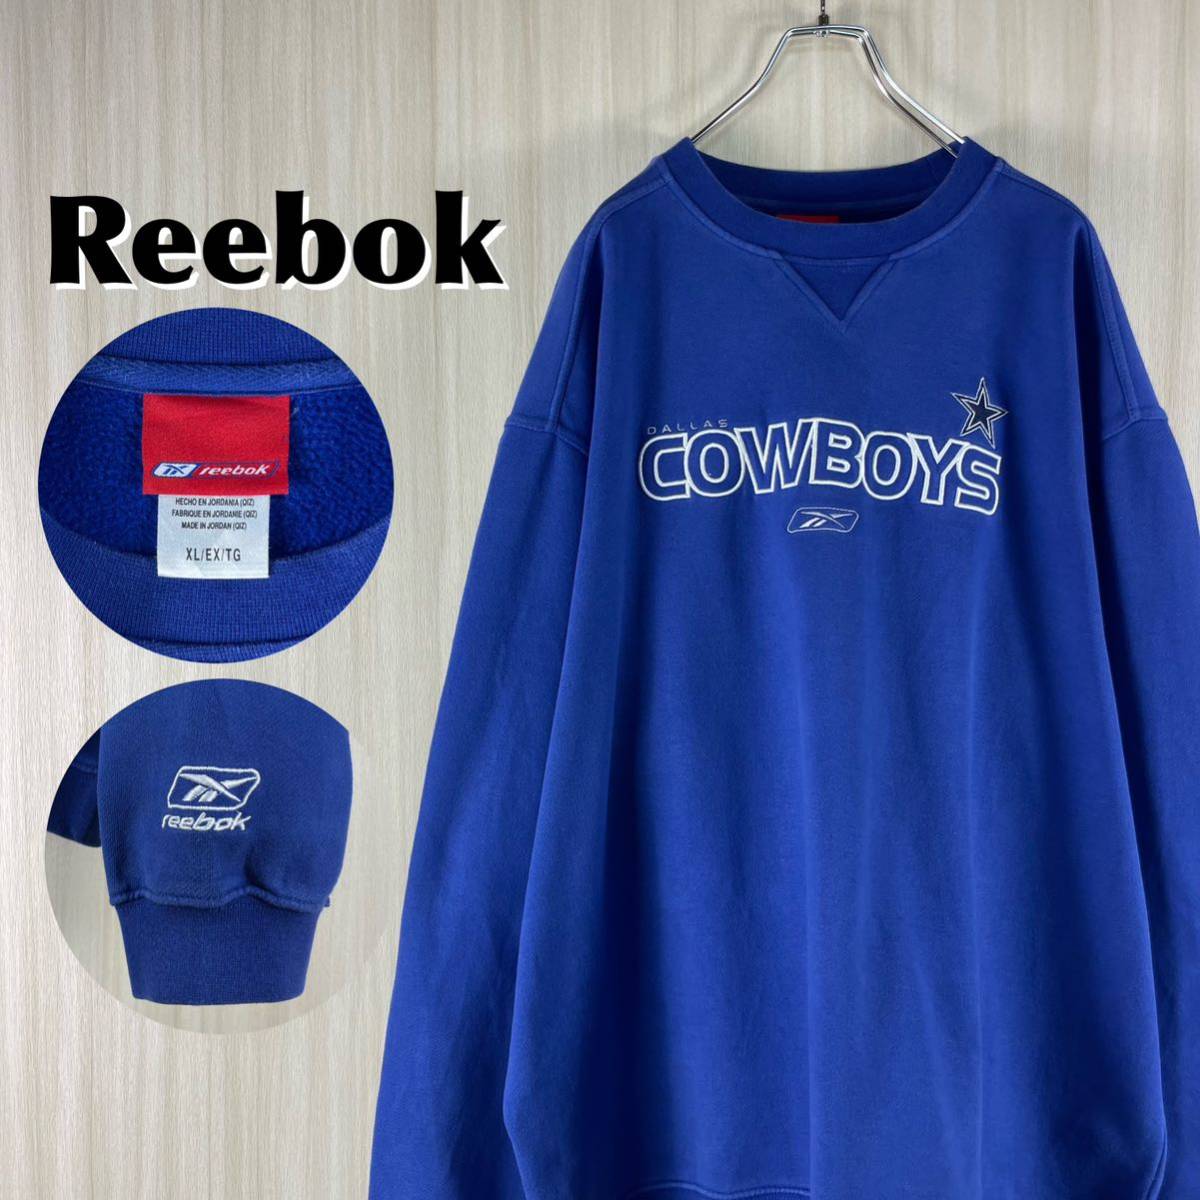 【激レア】リーボック NFL ダラス・カウボーイズ 全刺繍 ビッグロゴ ベクターロゴ 袖ロゴ 裏起毛 スウェット トレーナー XL ブルー 古着